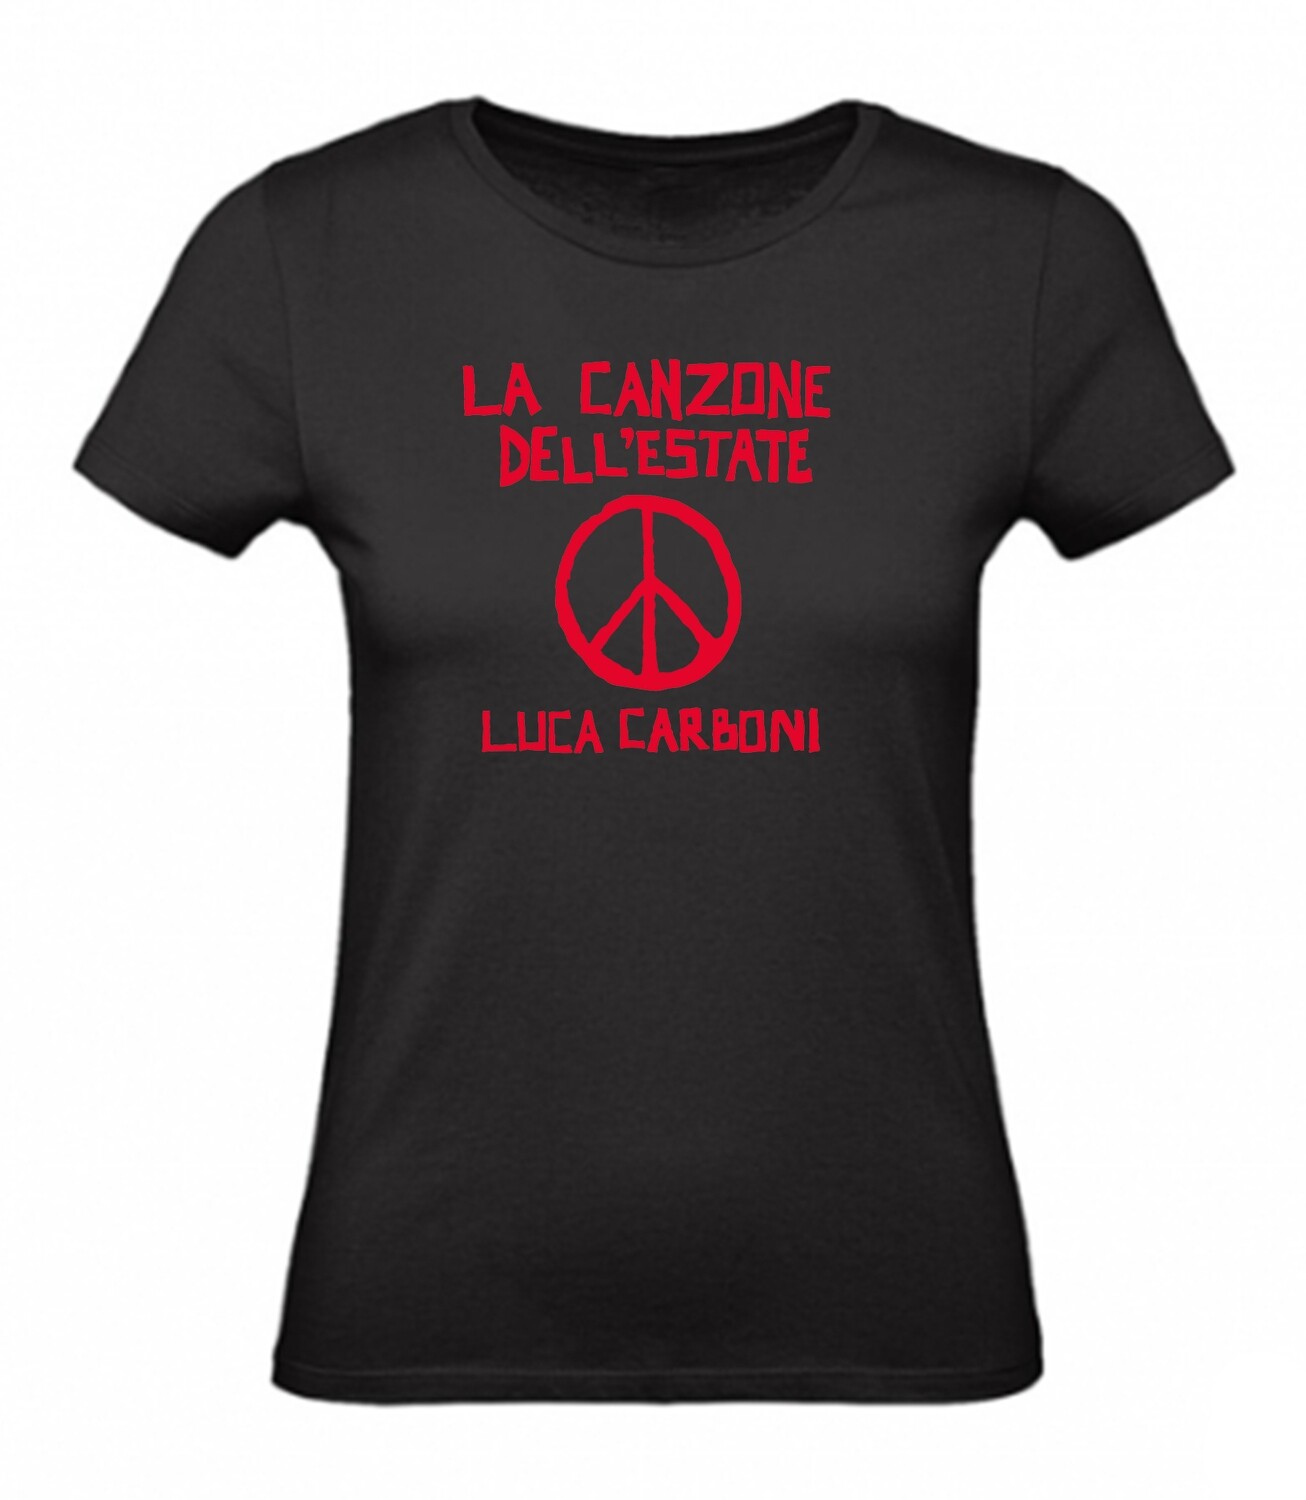 T-shirt NERA, DONNA "La Canzone dell'estate" - Luca Carboni